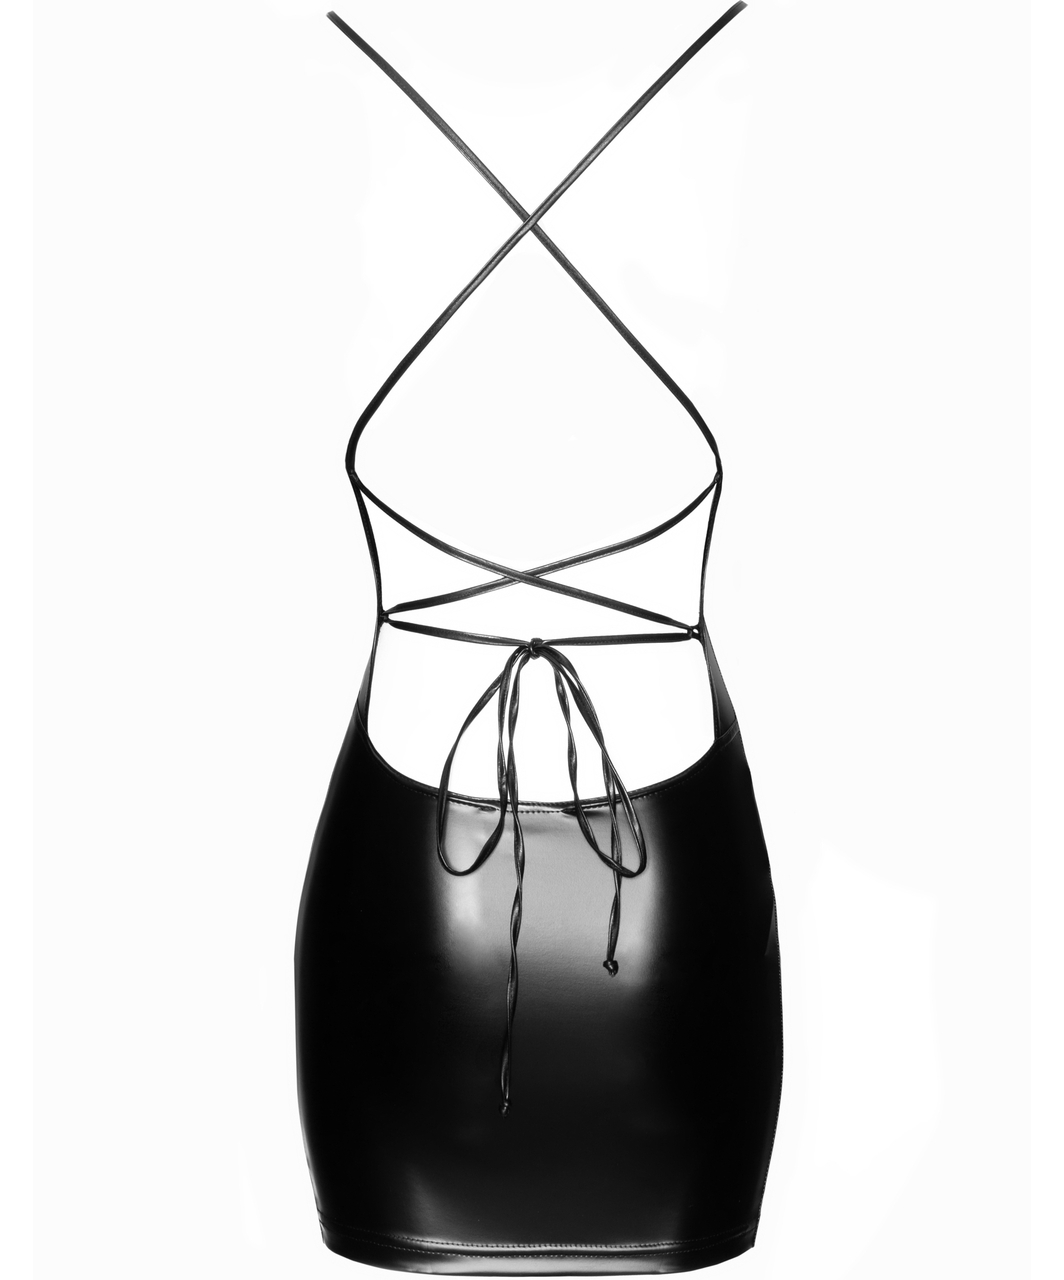 Noir Handmade черное матовое открытое сзади платье мини